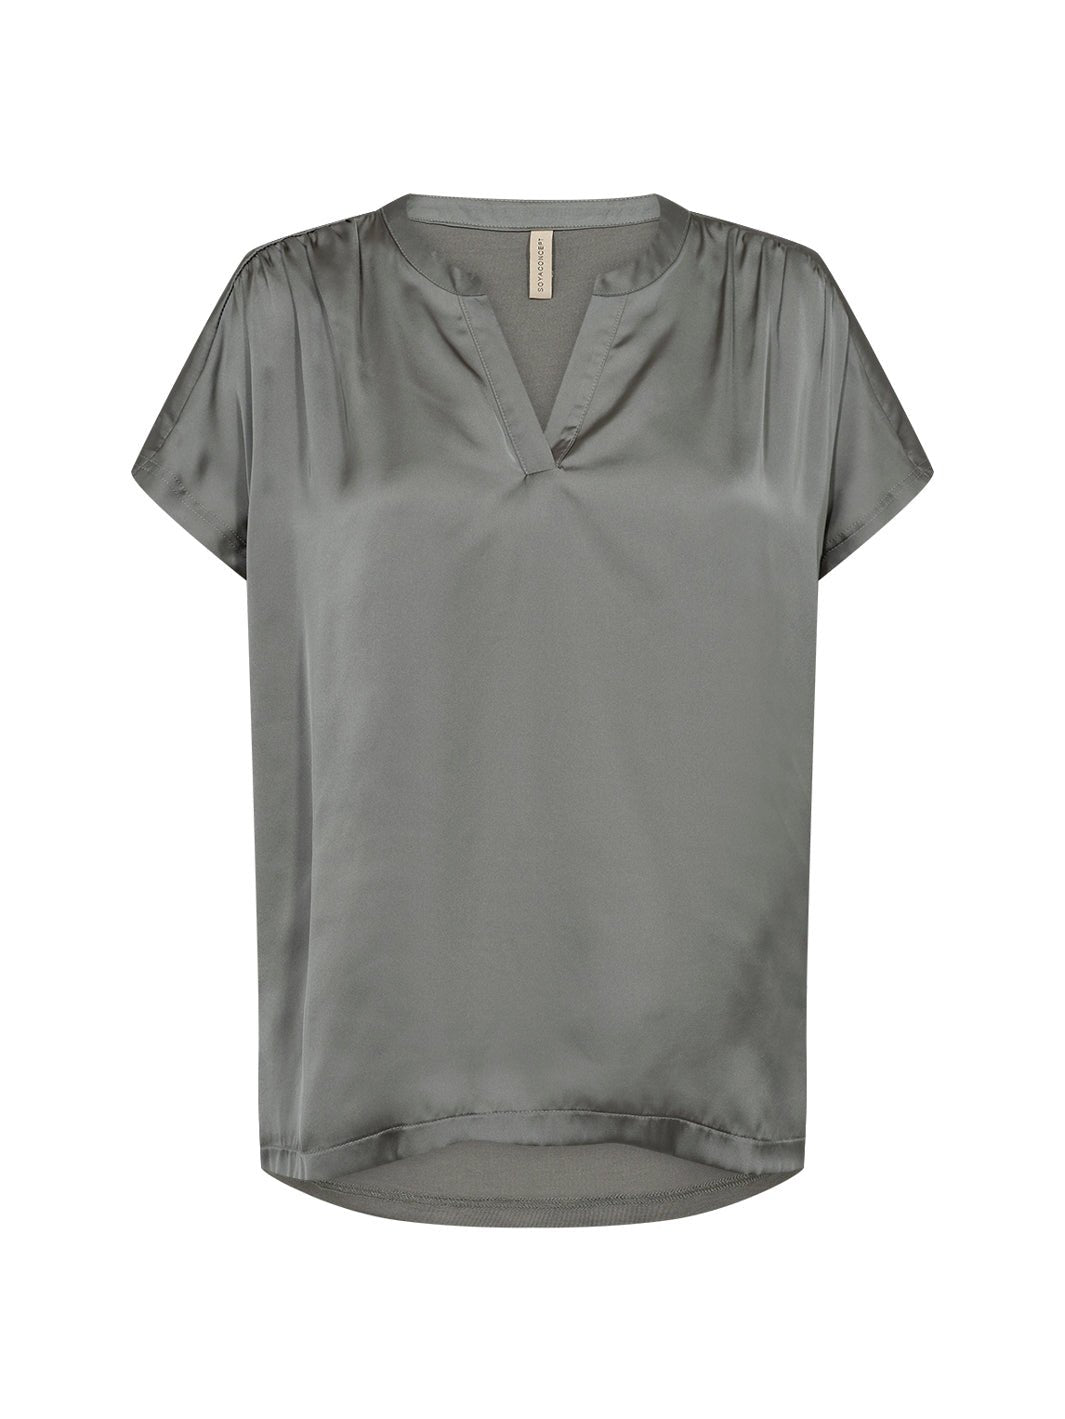 Soya Concept Thilde 49 t-shirt olive - Online-Mode